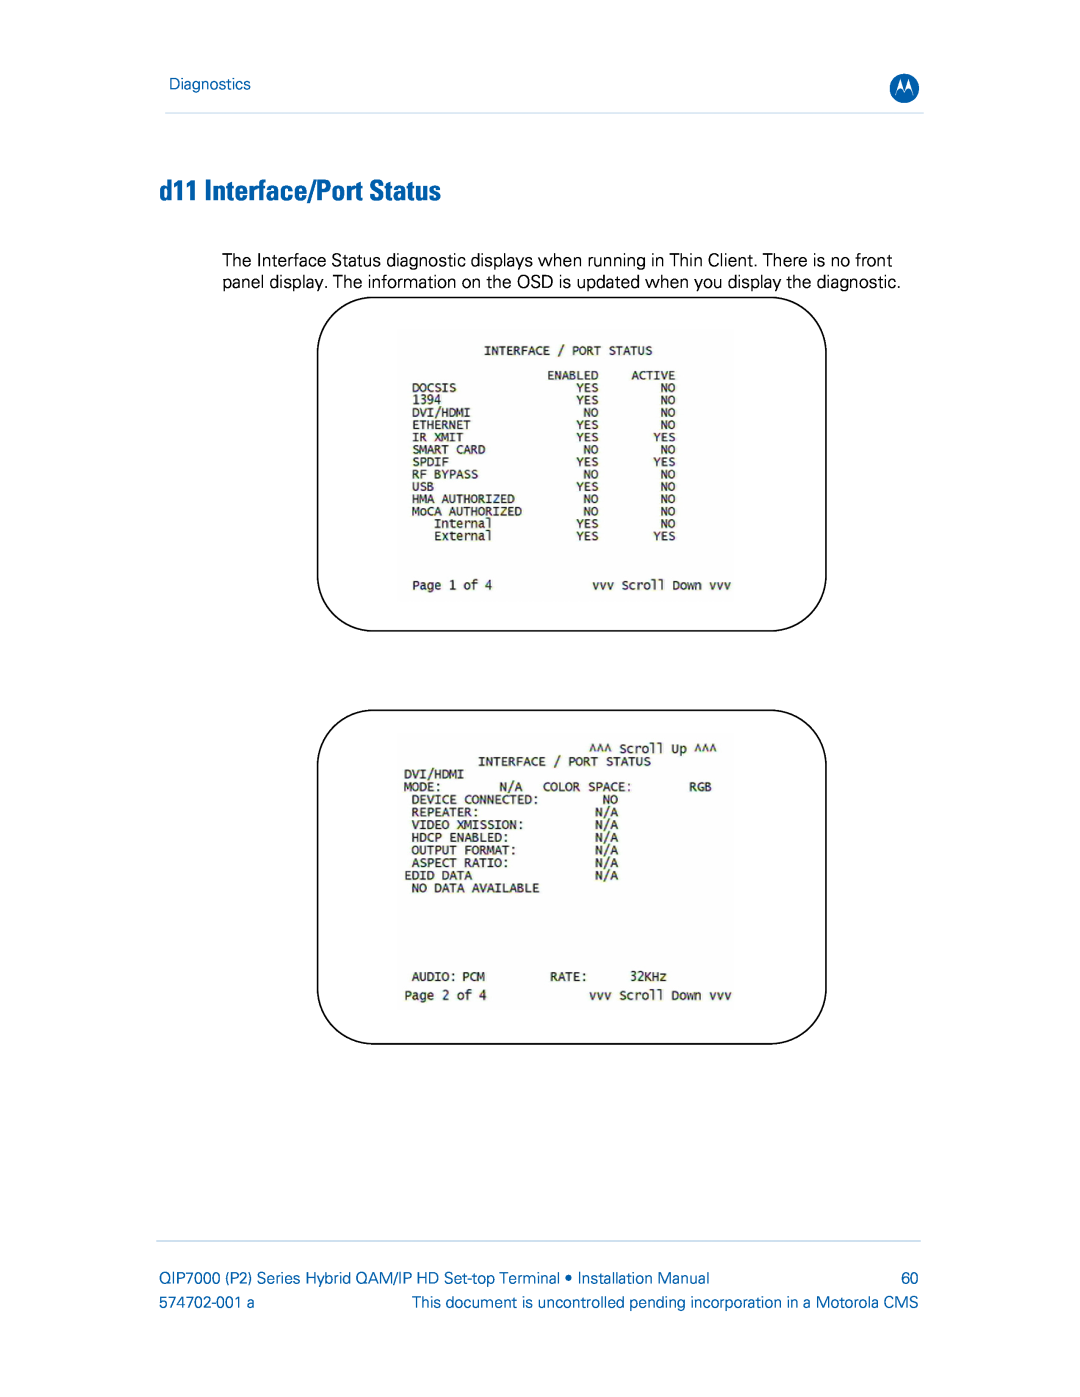 Motorola QIP7000 installation manual d11 Interface/Port Status, Diagnostics, 574702-001 a 